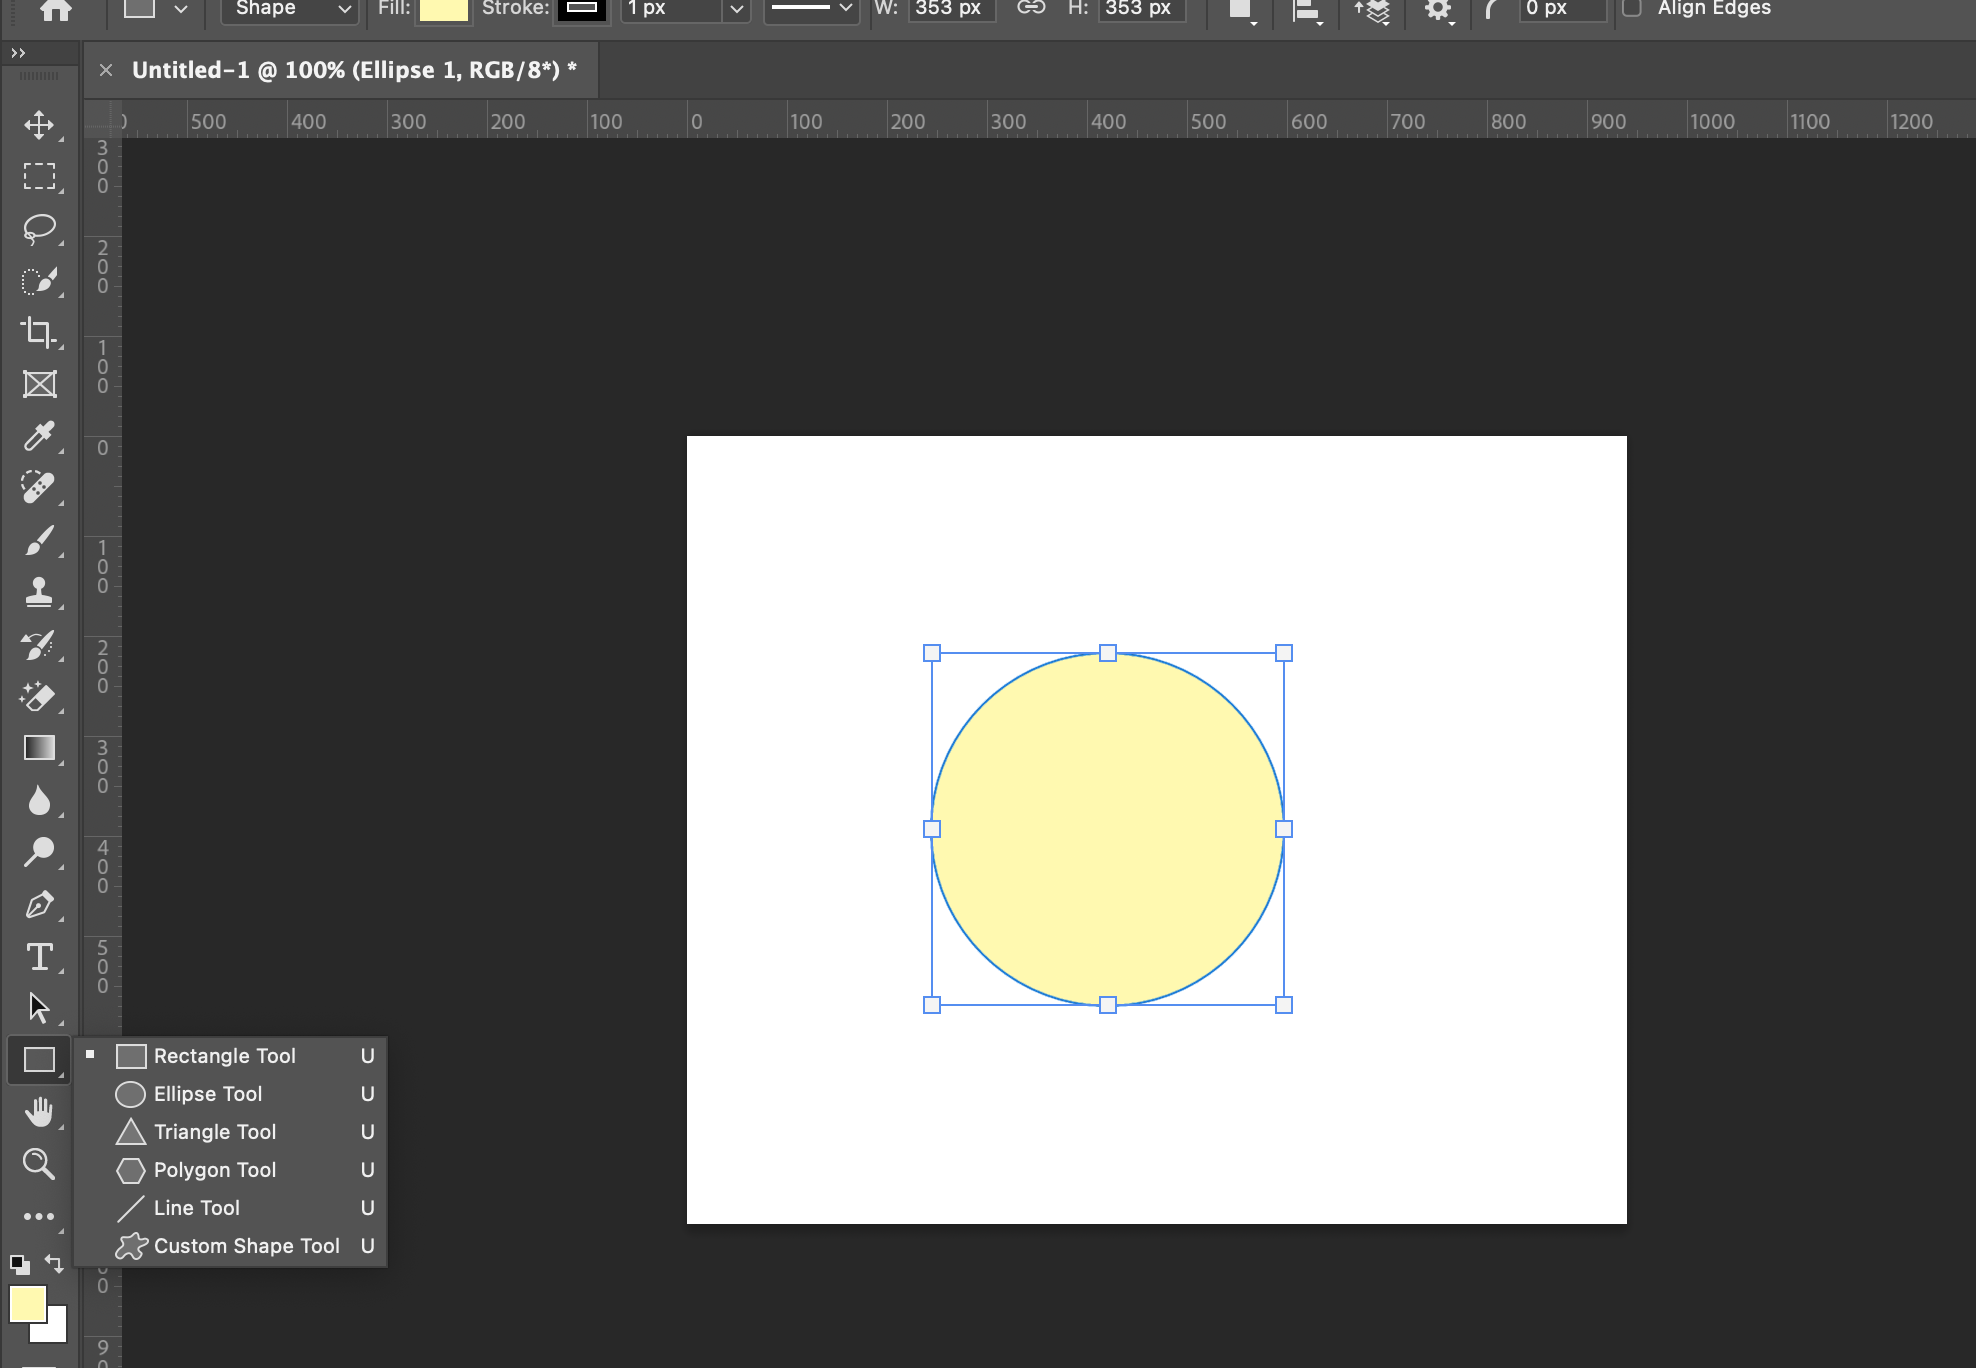 Vẽ trang trí hình tròn với hiệu ứng 3D - VnExpress